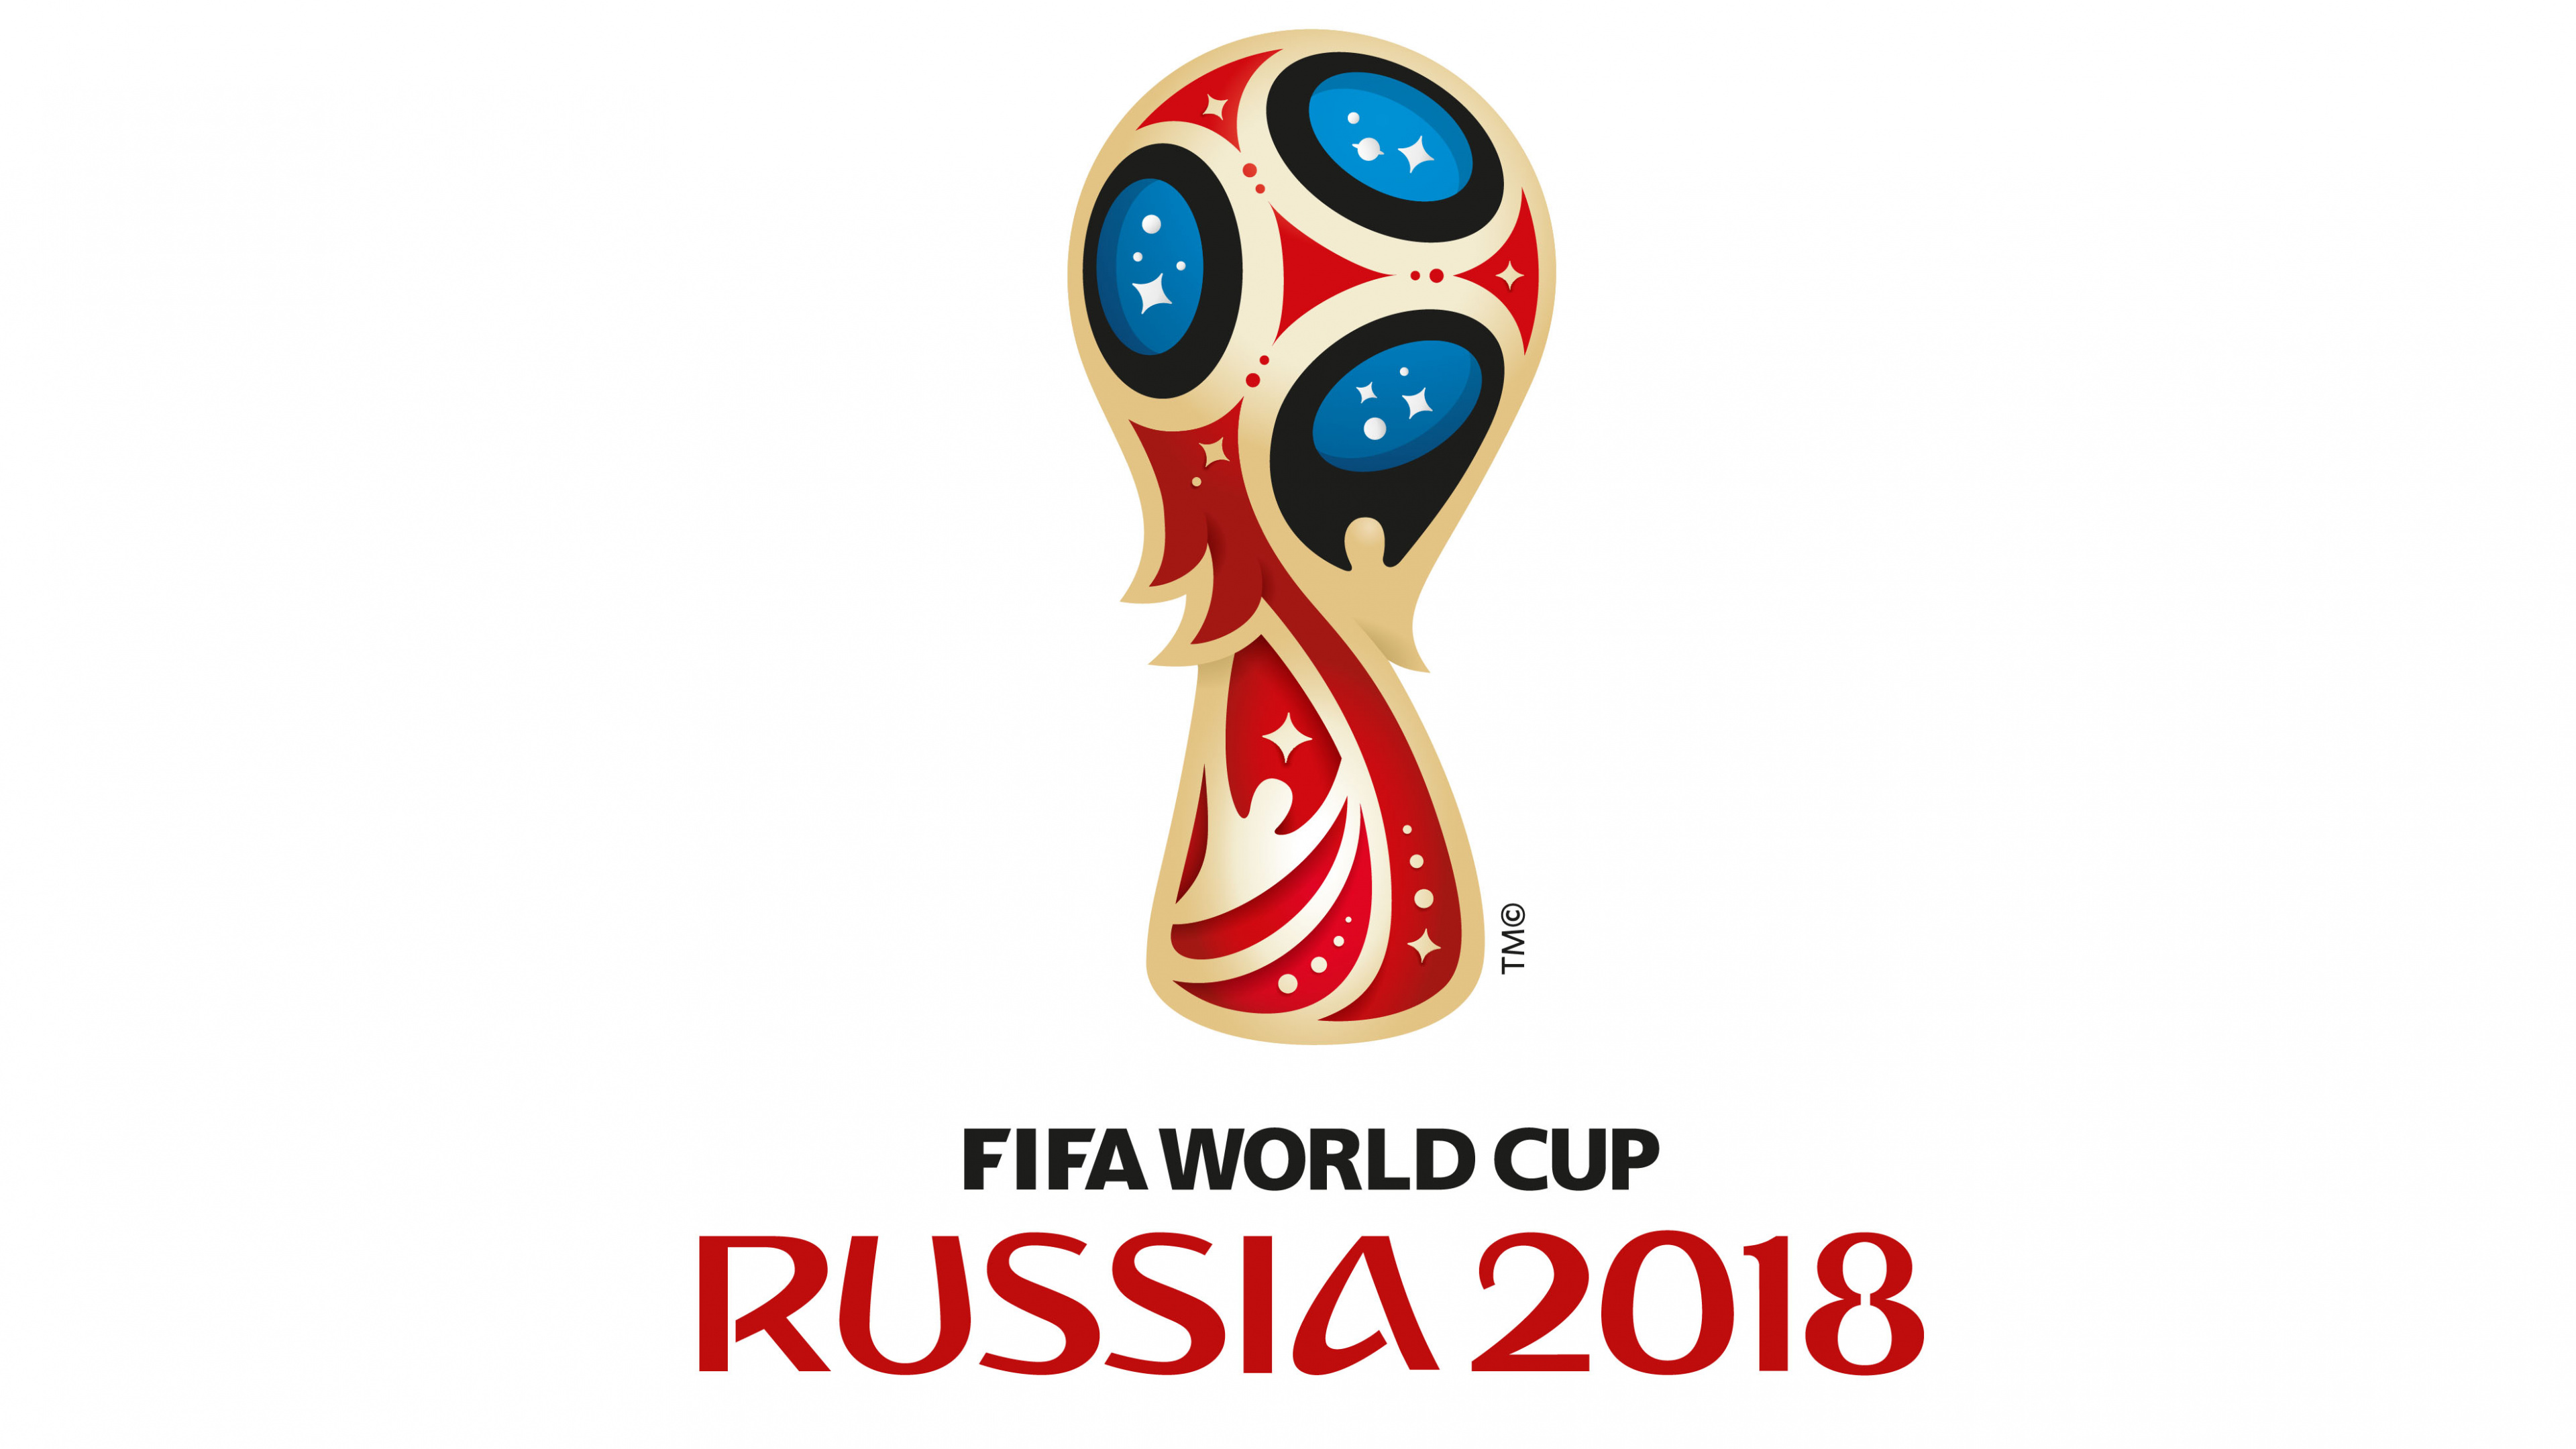 2018年世界杯, 国际足联, 品牌, 俄罗斯 壁纸 3840x2160 允许